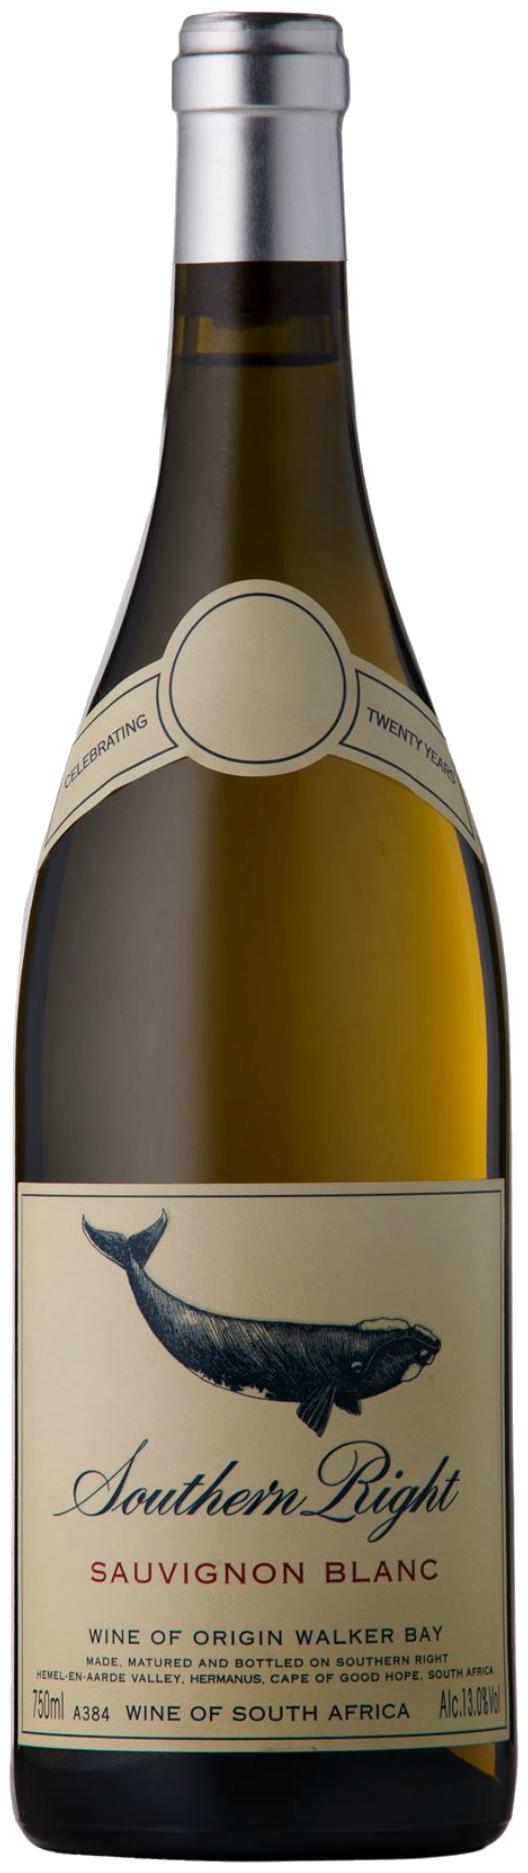 Southern Right Sauvignon Blanc (Weißwein, Südafrika, Walker Bay) |  Südafrika Weinversand